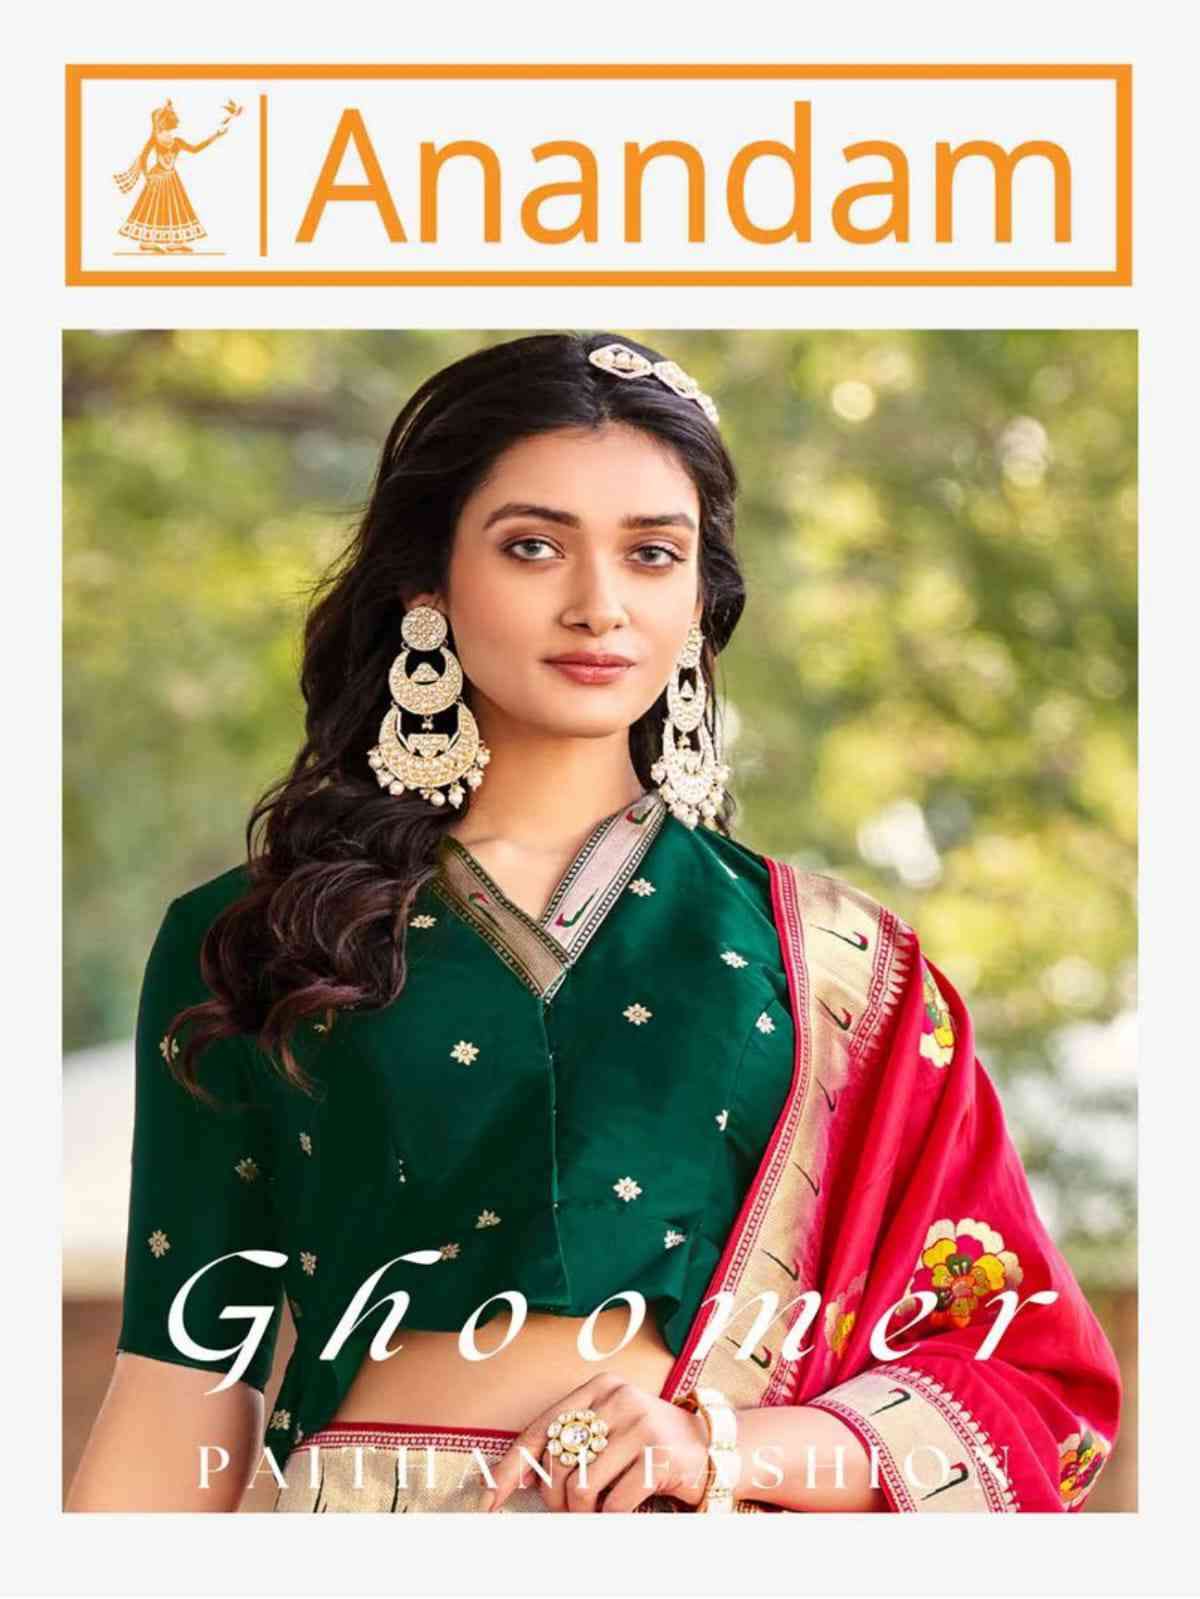 Anandam Ghoomer 2518 To 2522 Wedding Wear Banarasi Lehenga Choli Online Wholesaler